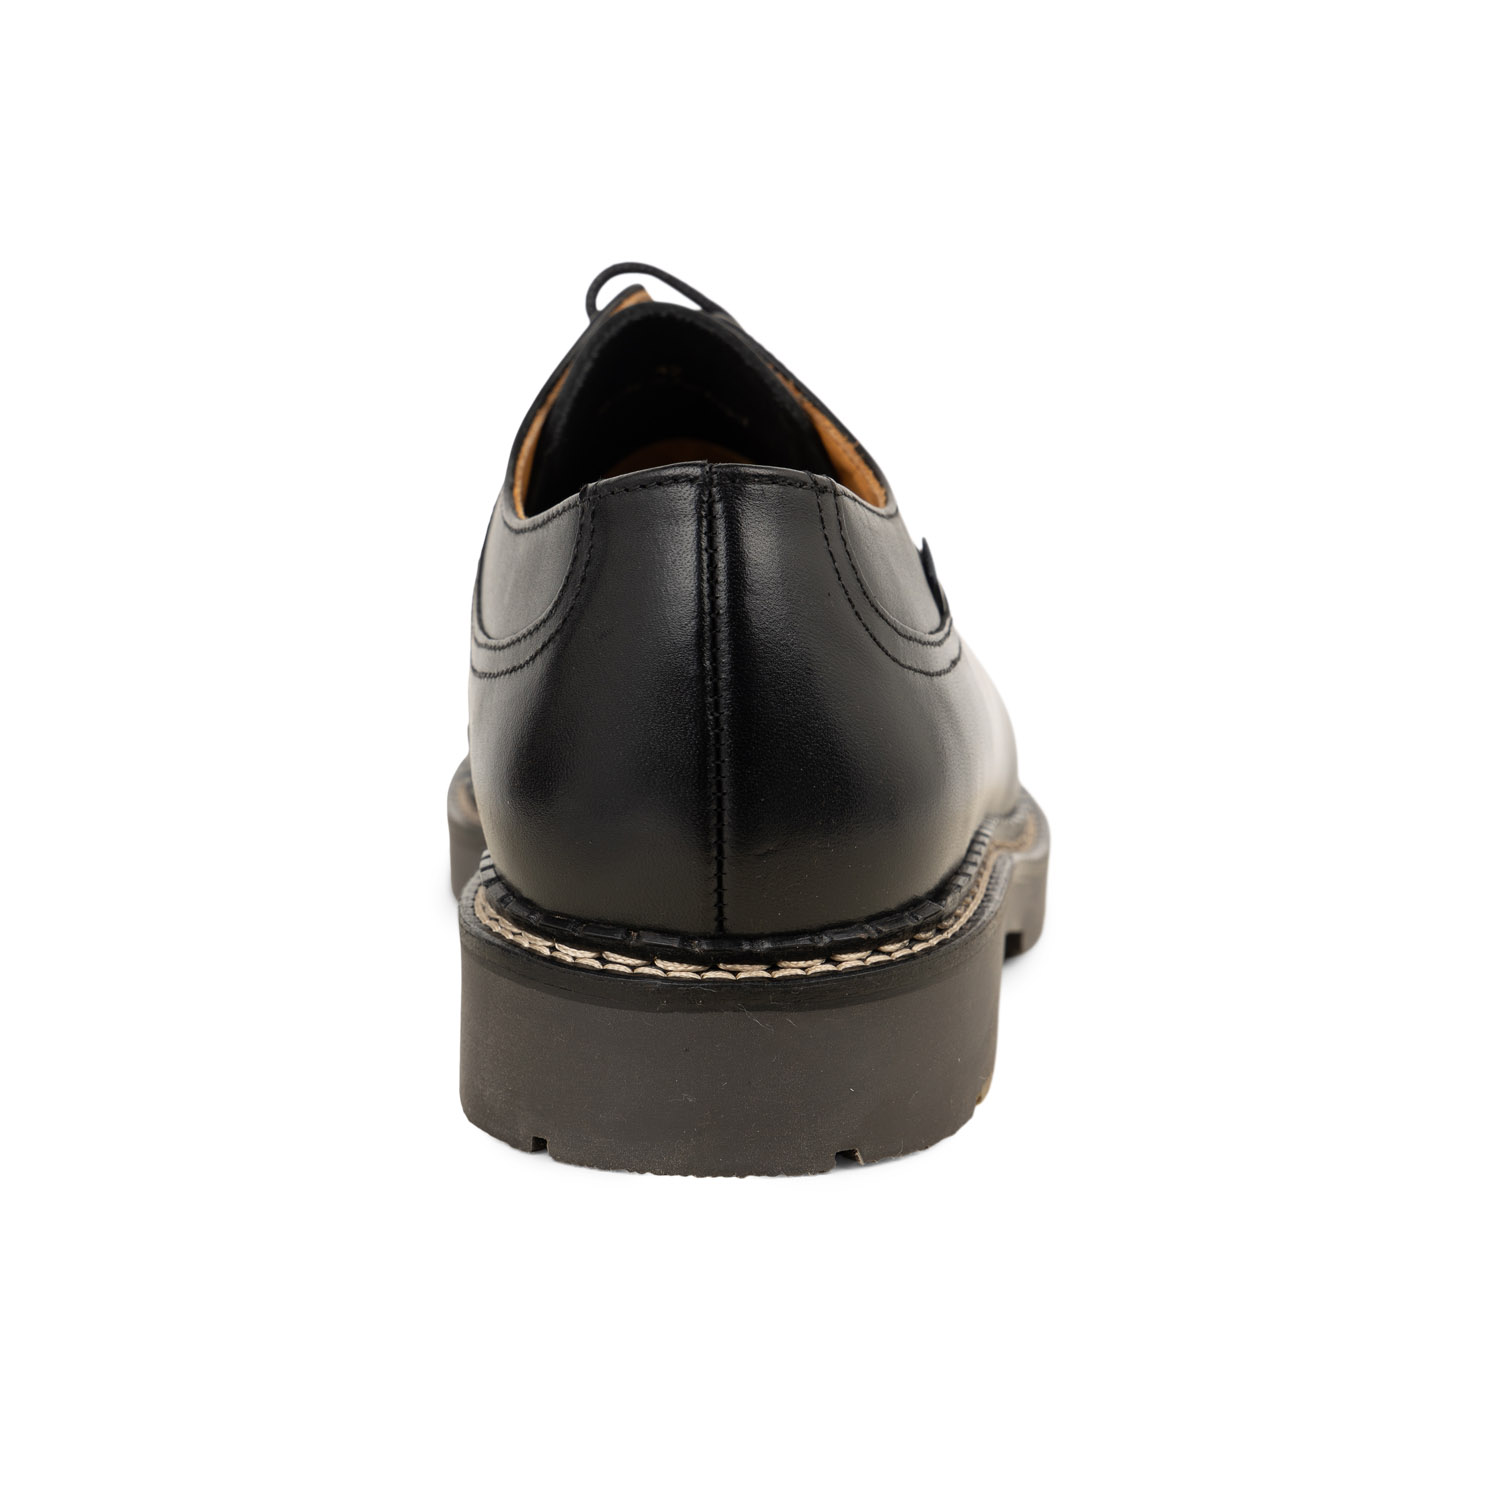 03 - MONTARIO - CHRISTIAN PELLET - Chaussures à lacets - Cuir